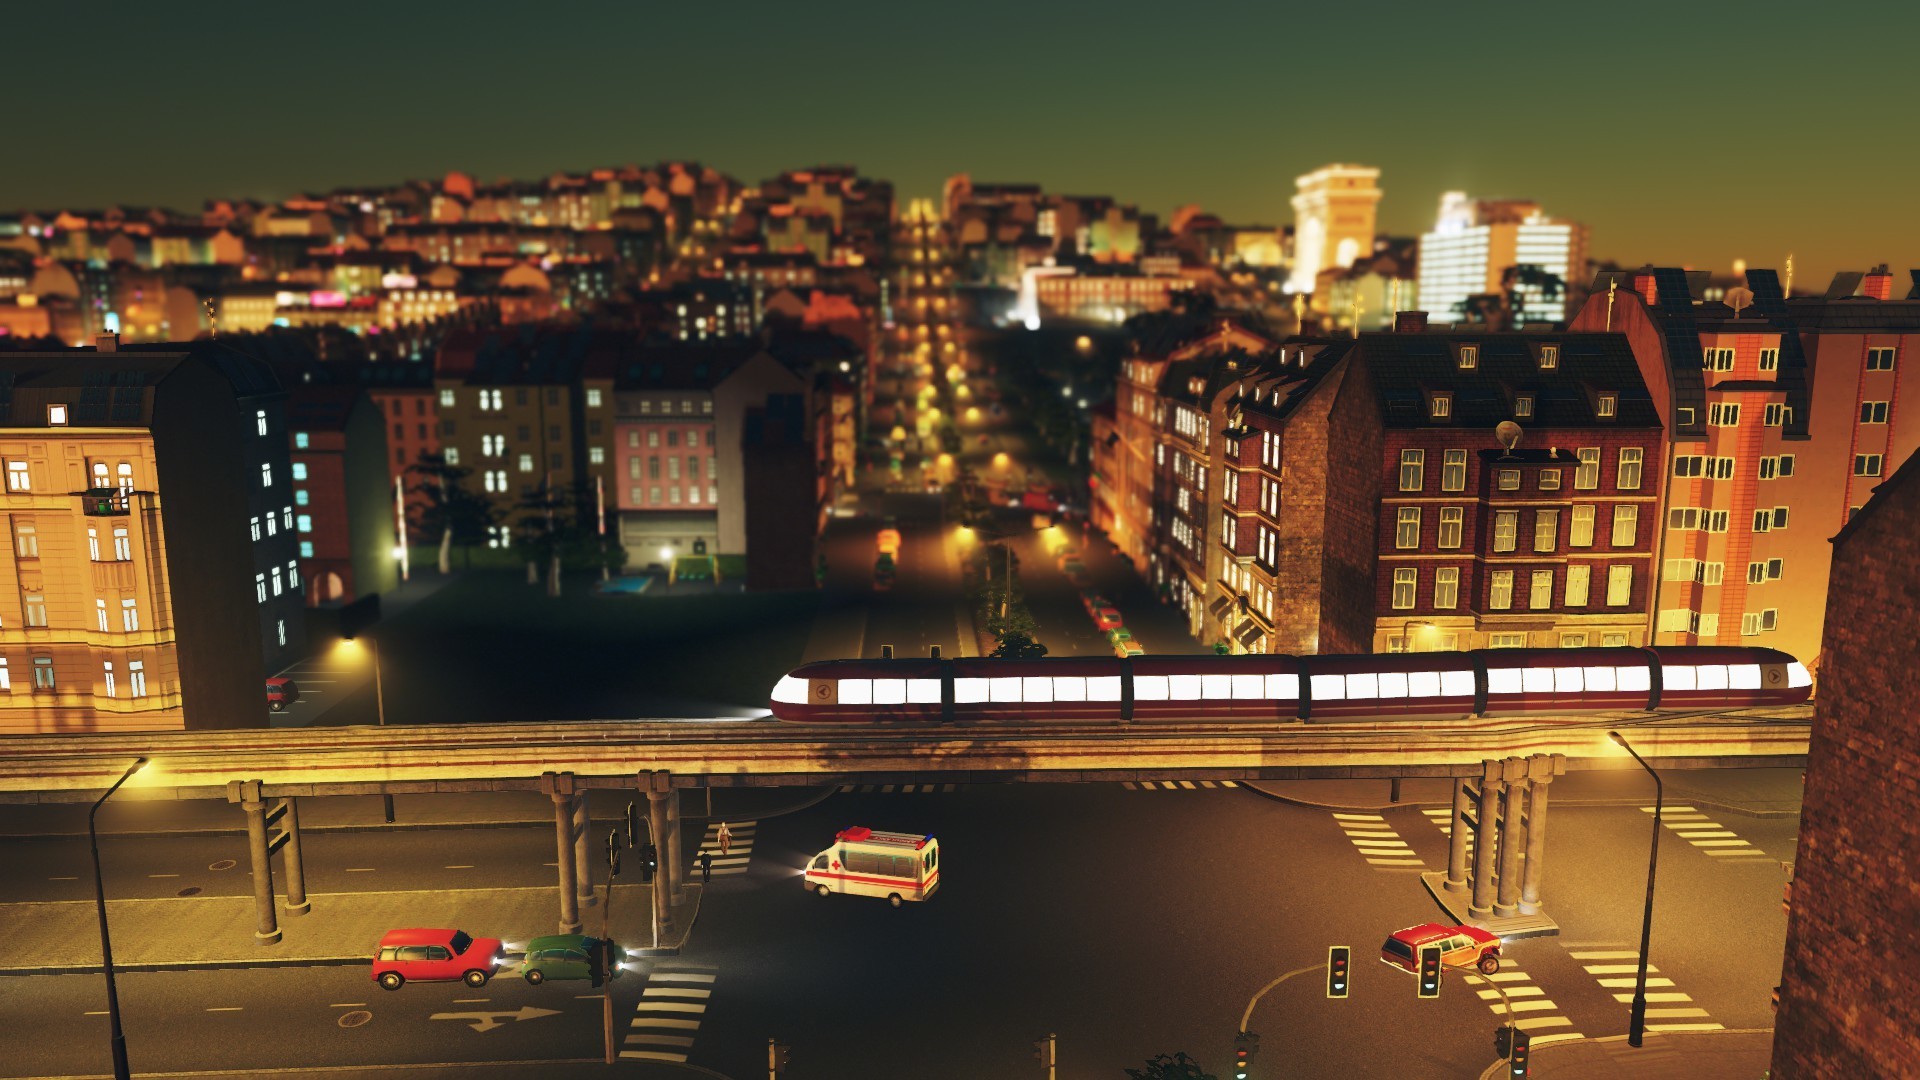 سی دی کی اریجینال استیم Cities: Skylines - Mass Transit